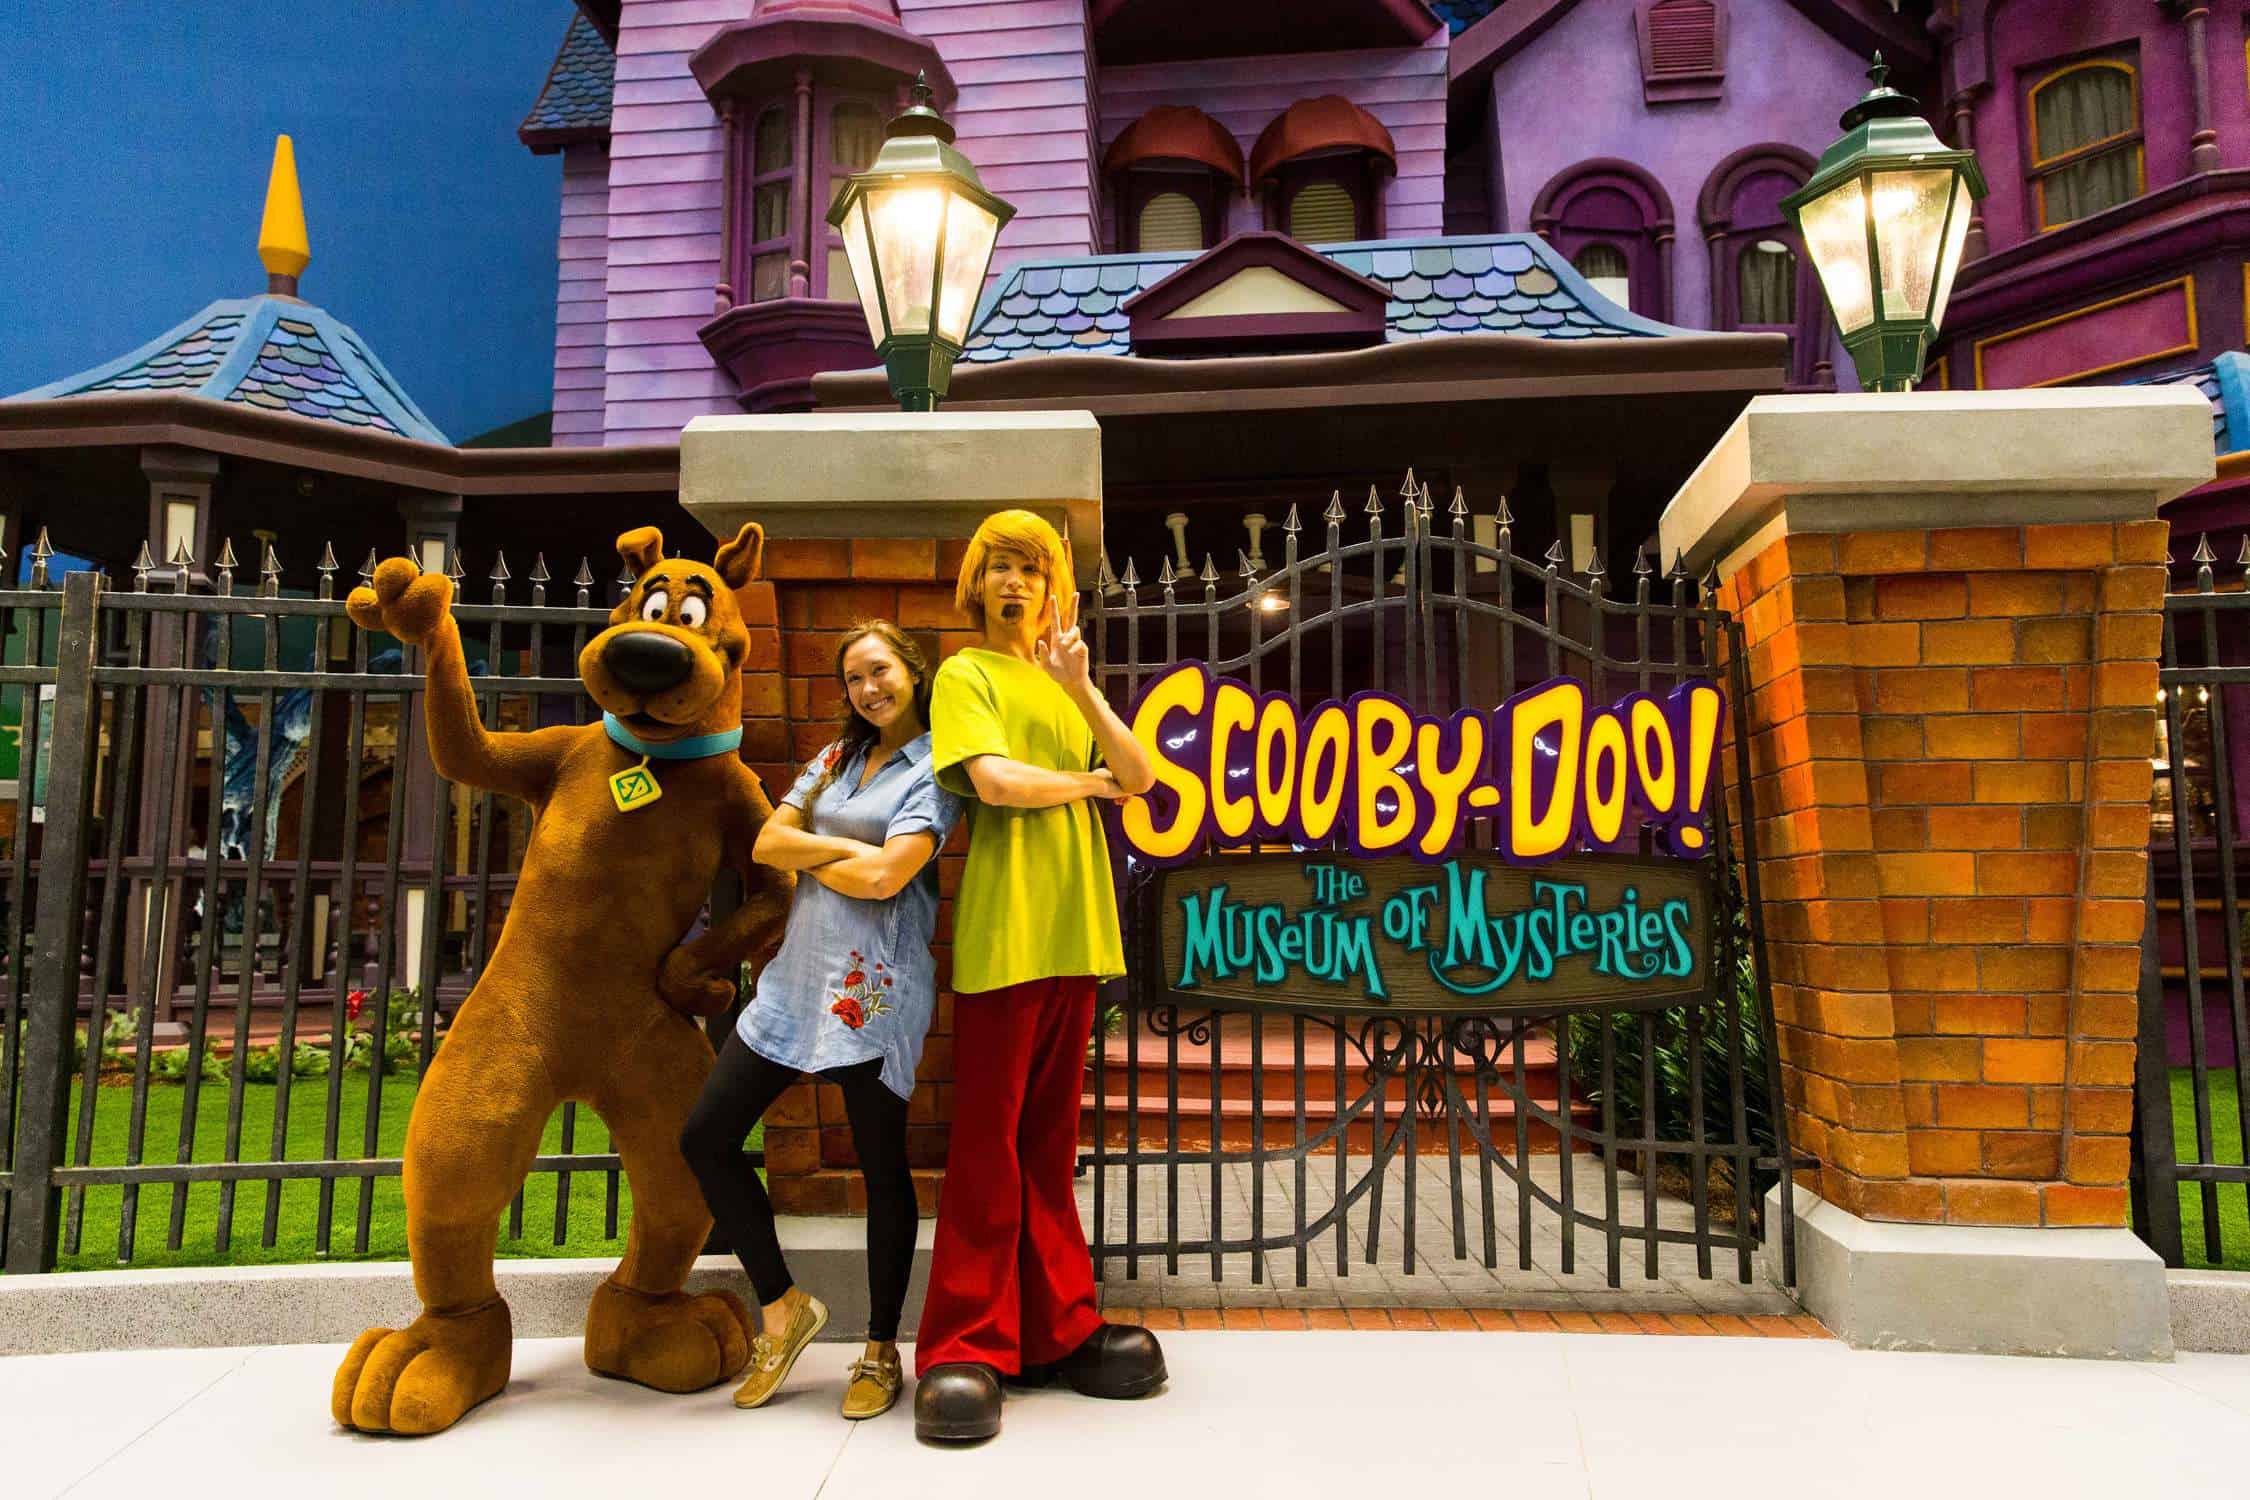 Scooby-Doo Museum Mysteries Photo Op